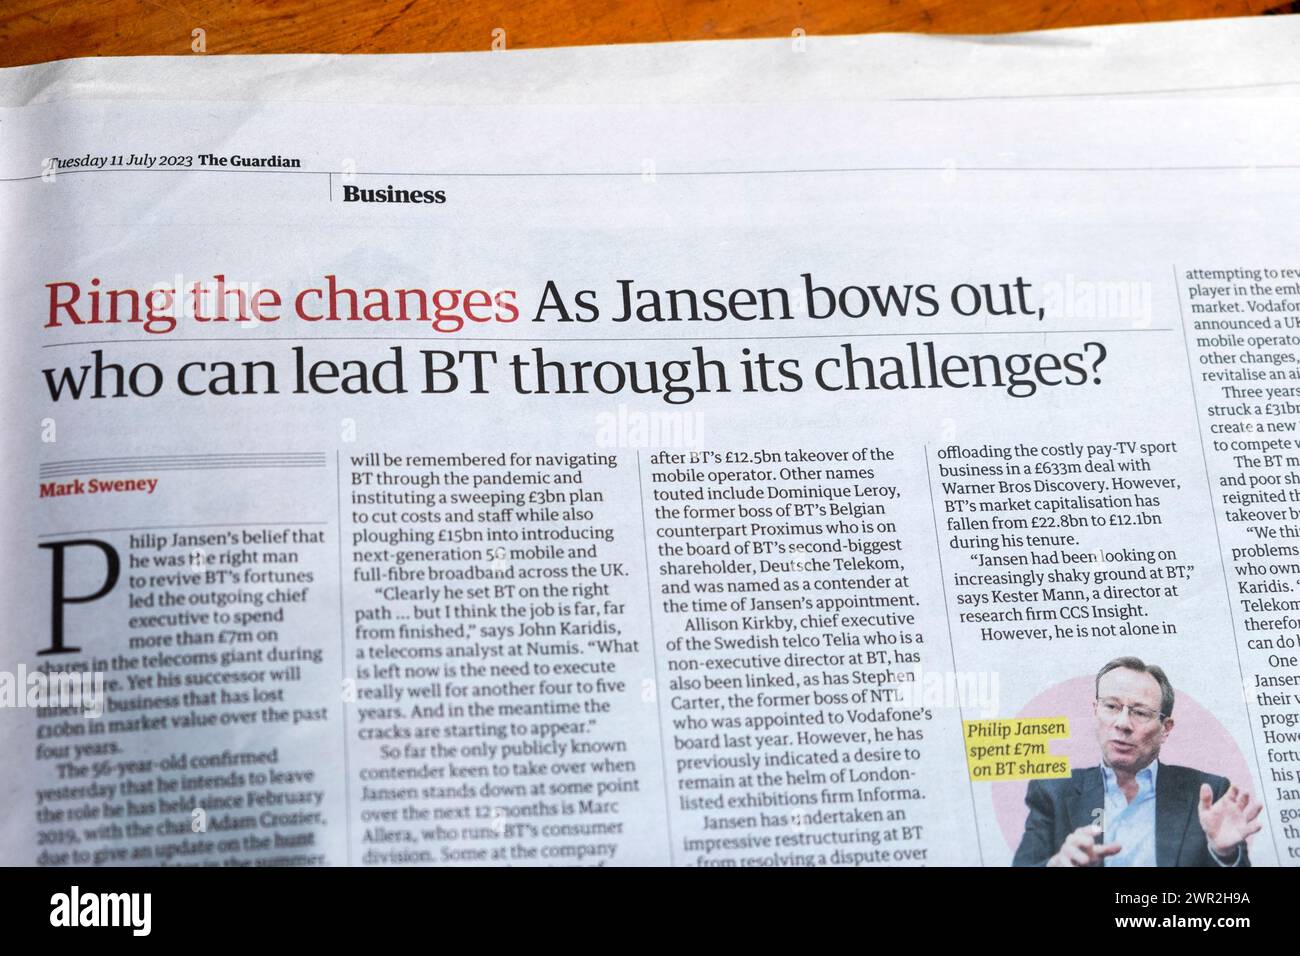 "Suonate i cambiamenti mentre "Philip" Jansen si inchina, chi può guidare BT attraverso le sue sfide?" Titolo del quotidiano Guardian CEO di British Telecom 11 luglio 2023 Foto Stock